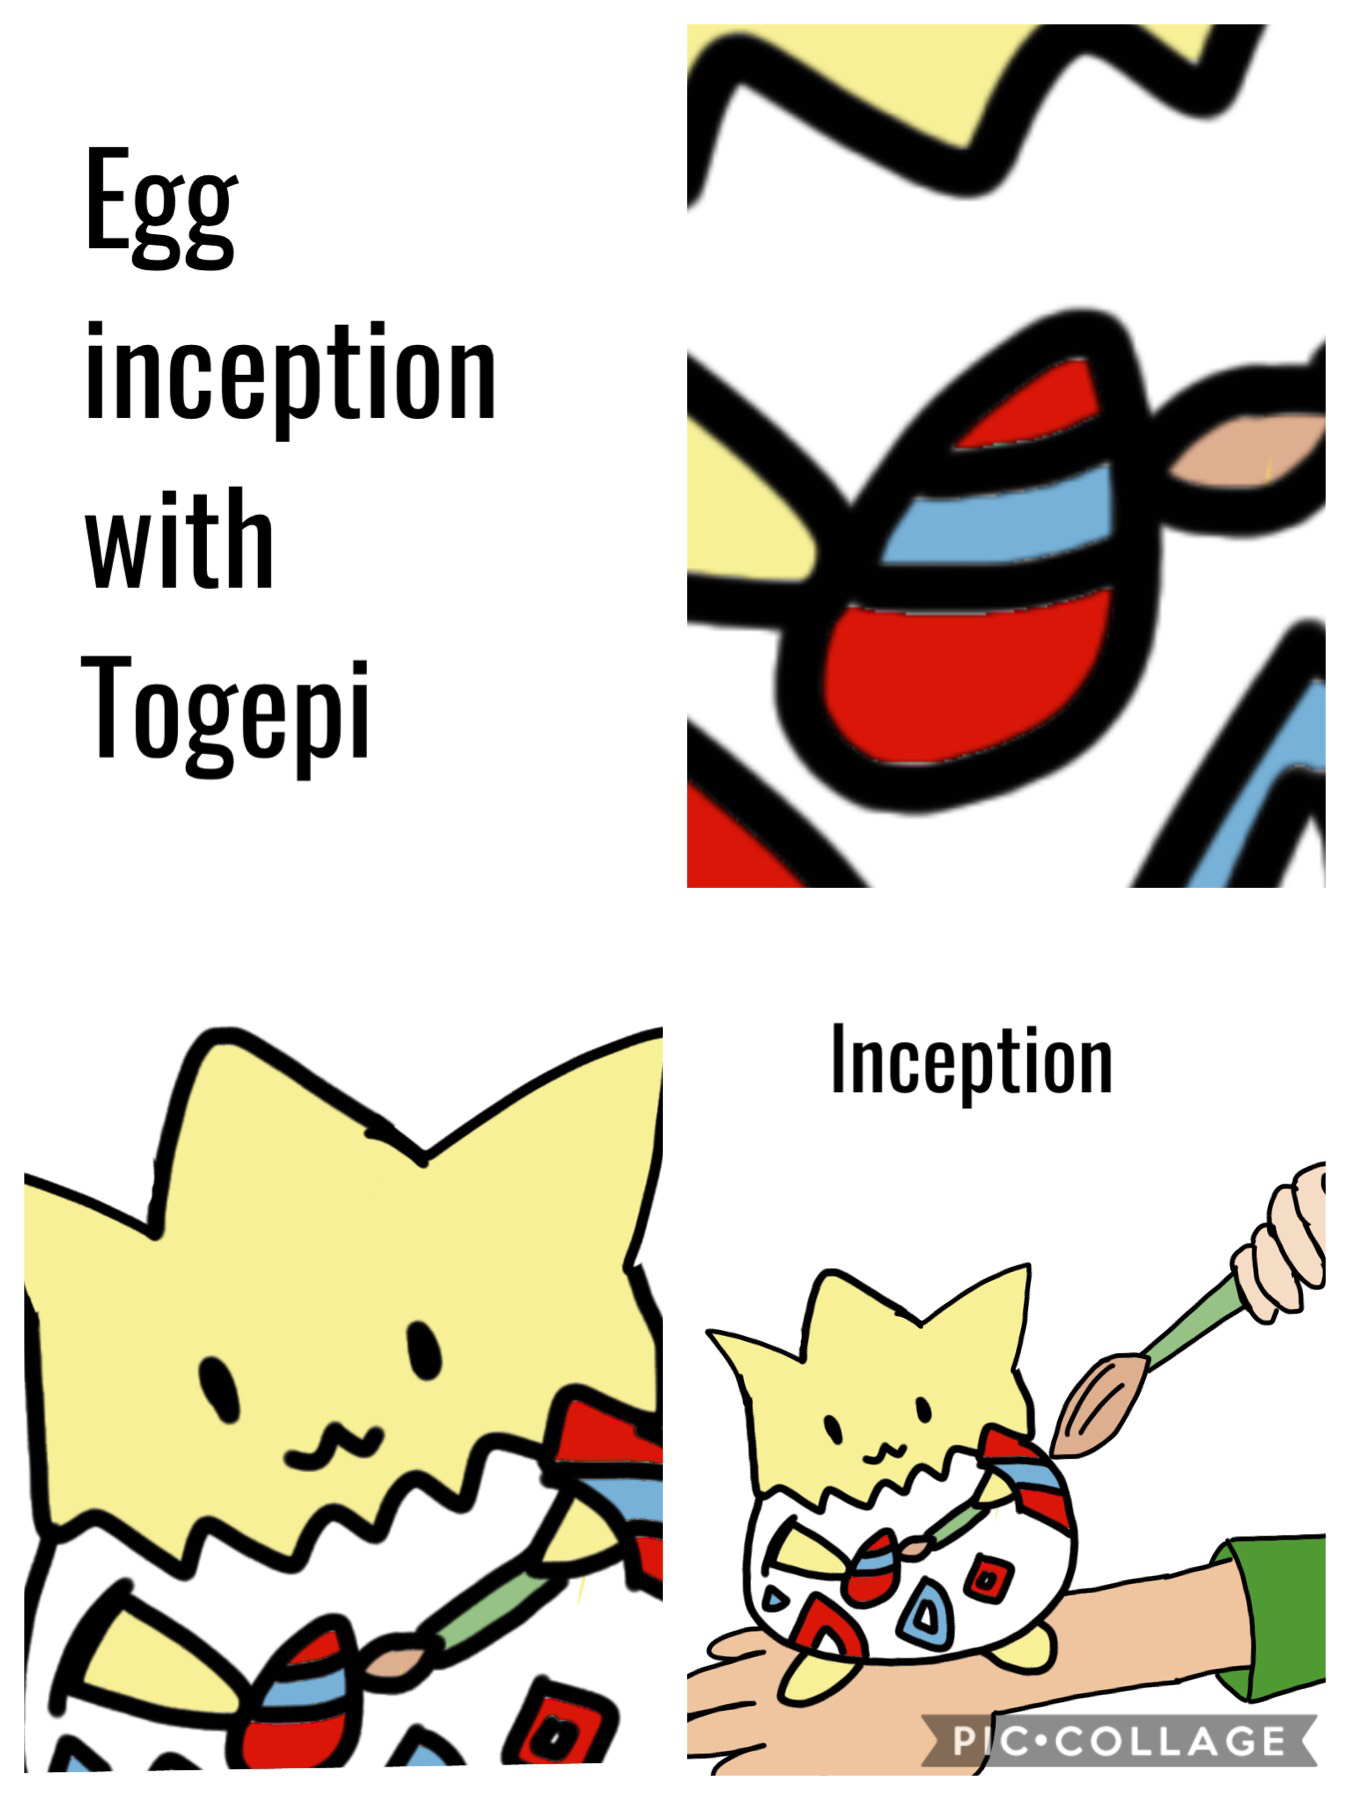 Egg inception with Togepi